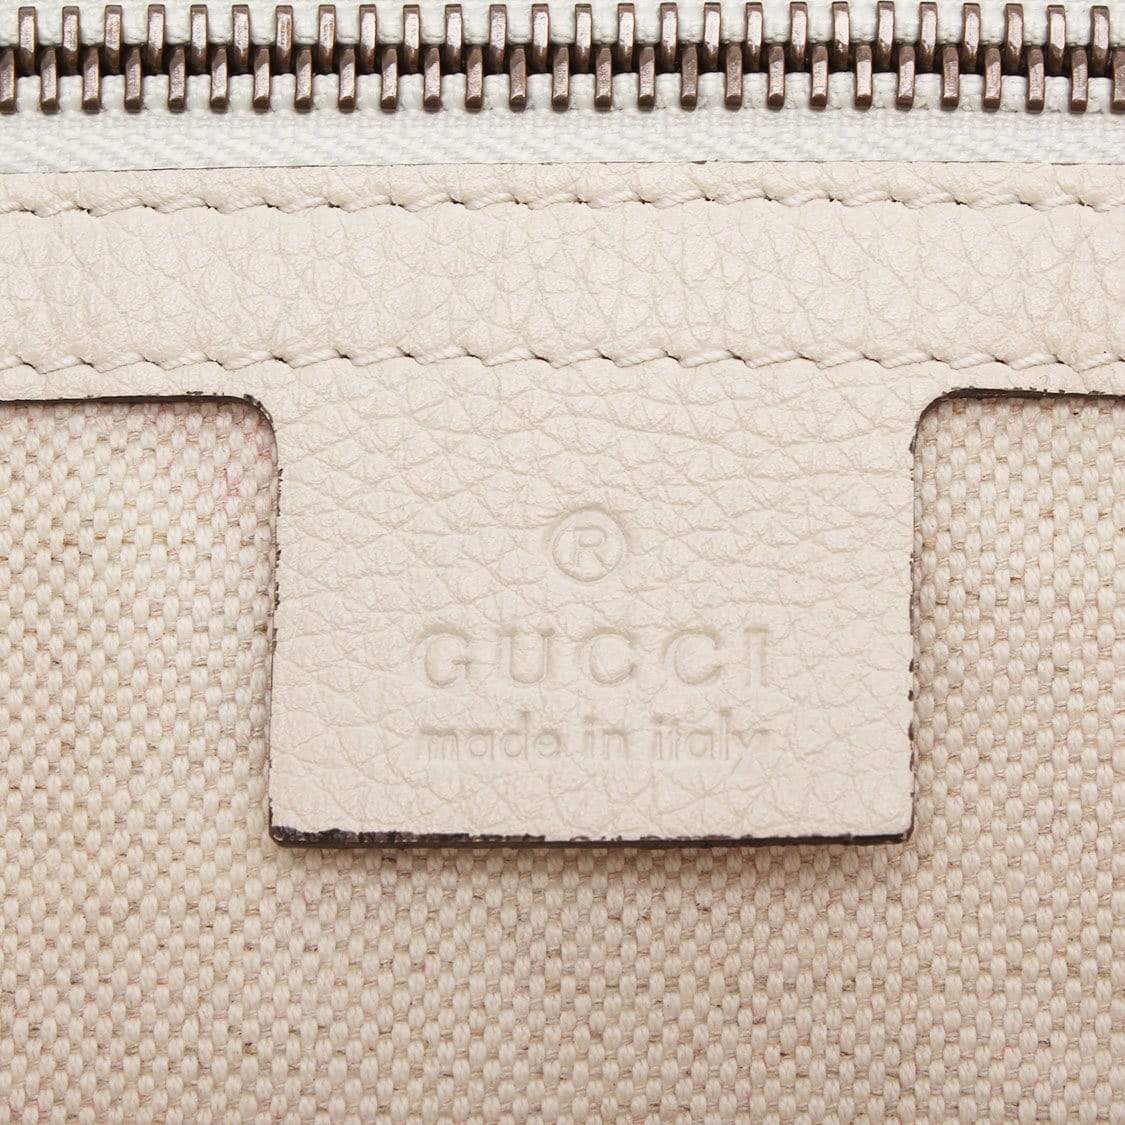 Gucci Gucci Leather Logo Crossbody Bag